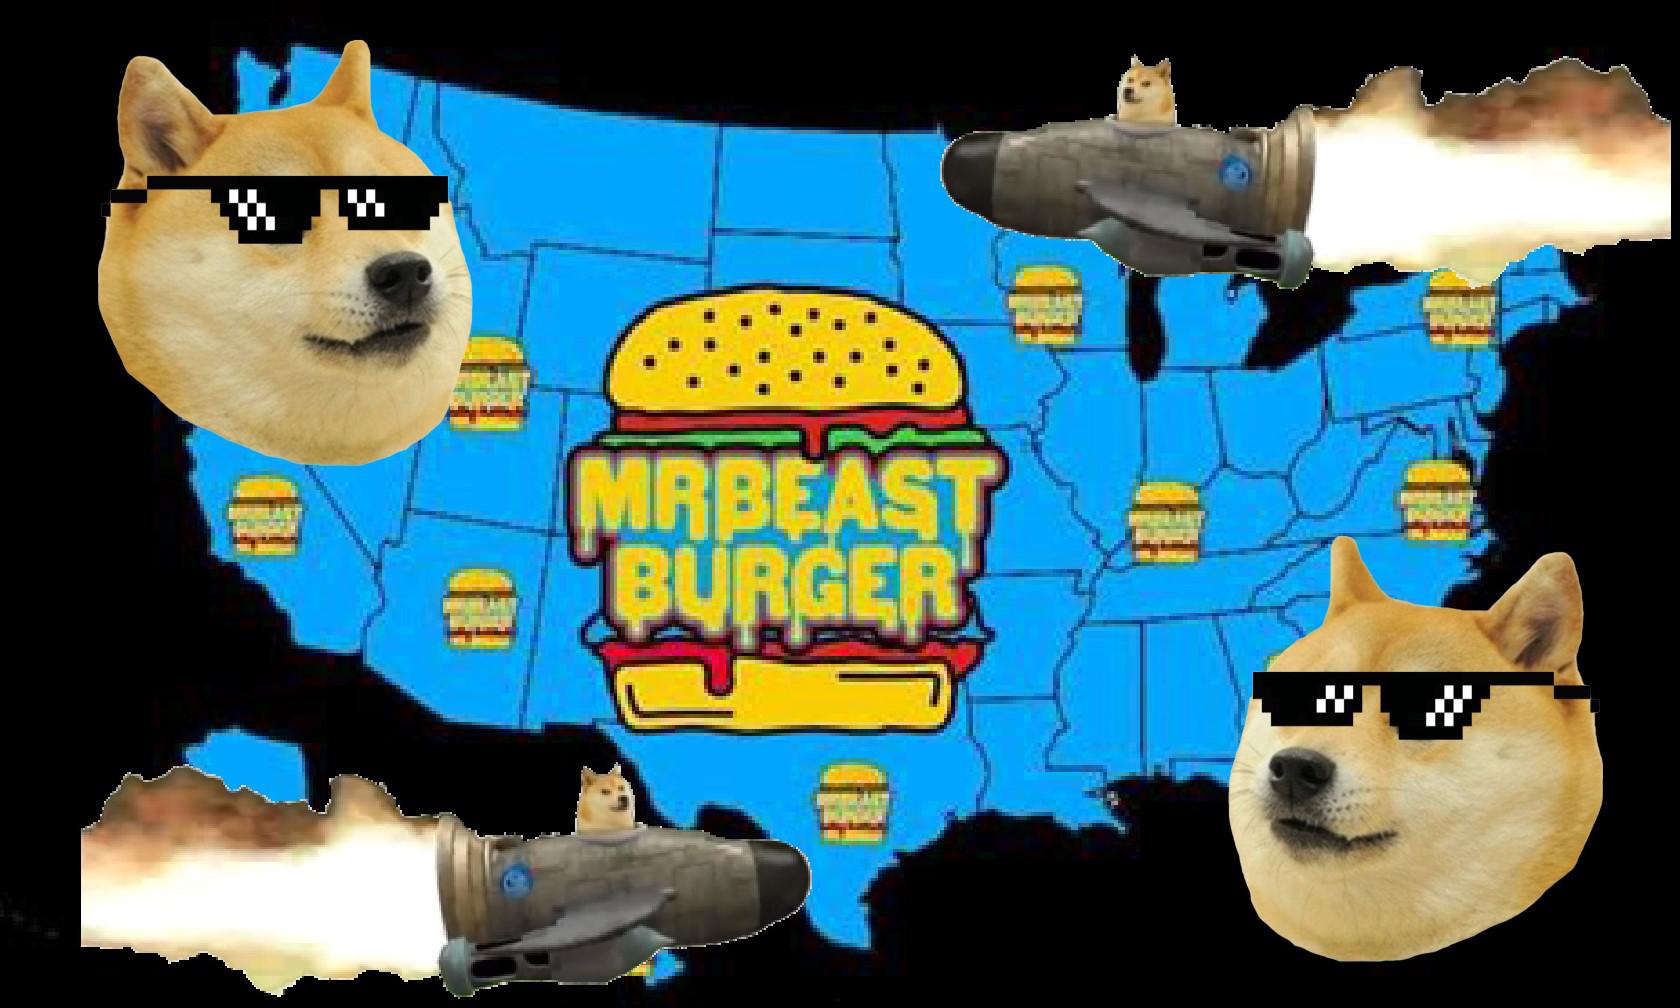 Chuỗi thức ăn nhanh MrBeast Burger hứa sẽ chấp nhận Dogecoin nếu Elon Musk chịu làm việc này